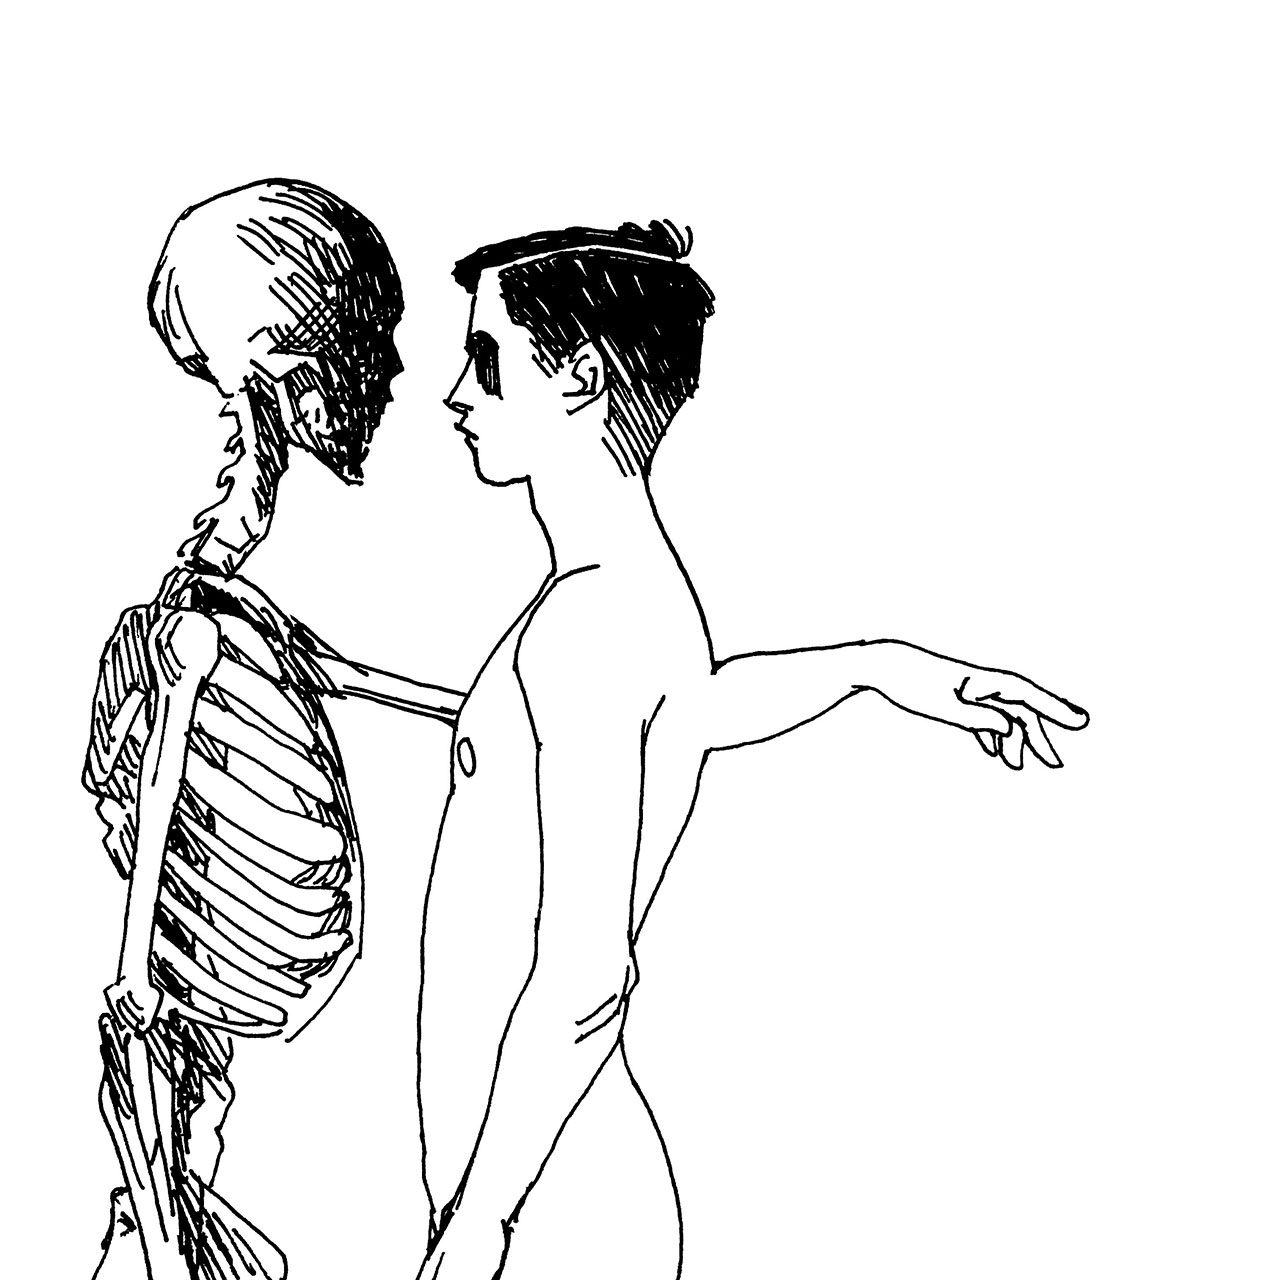 Drawing of skeleton touching human Illustration av skelett som rör vid människa